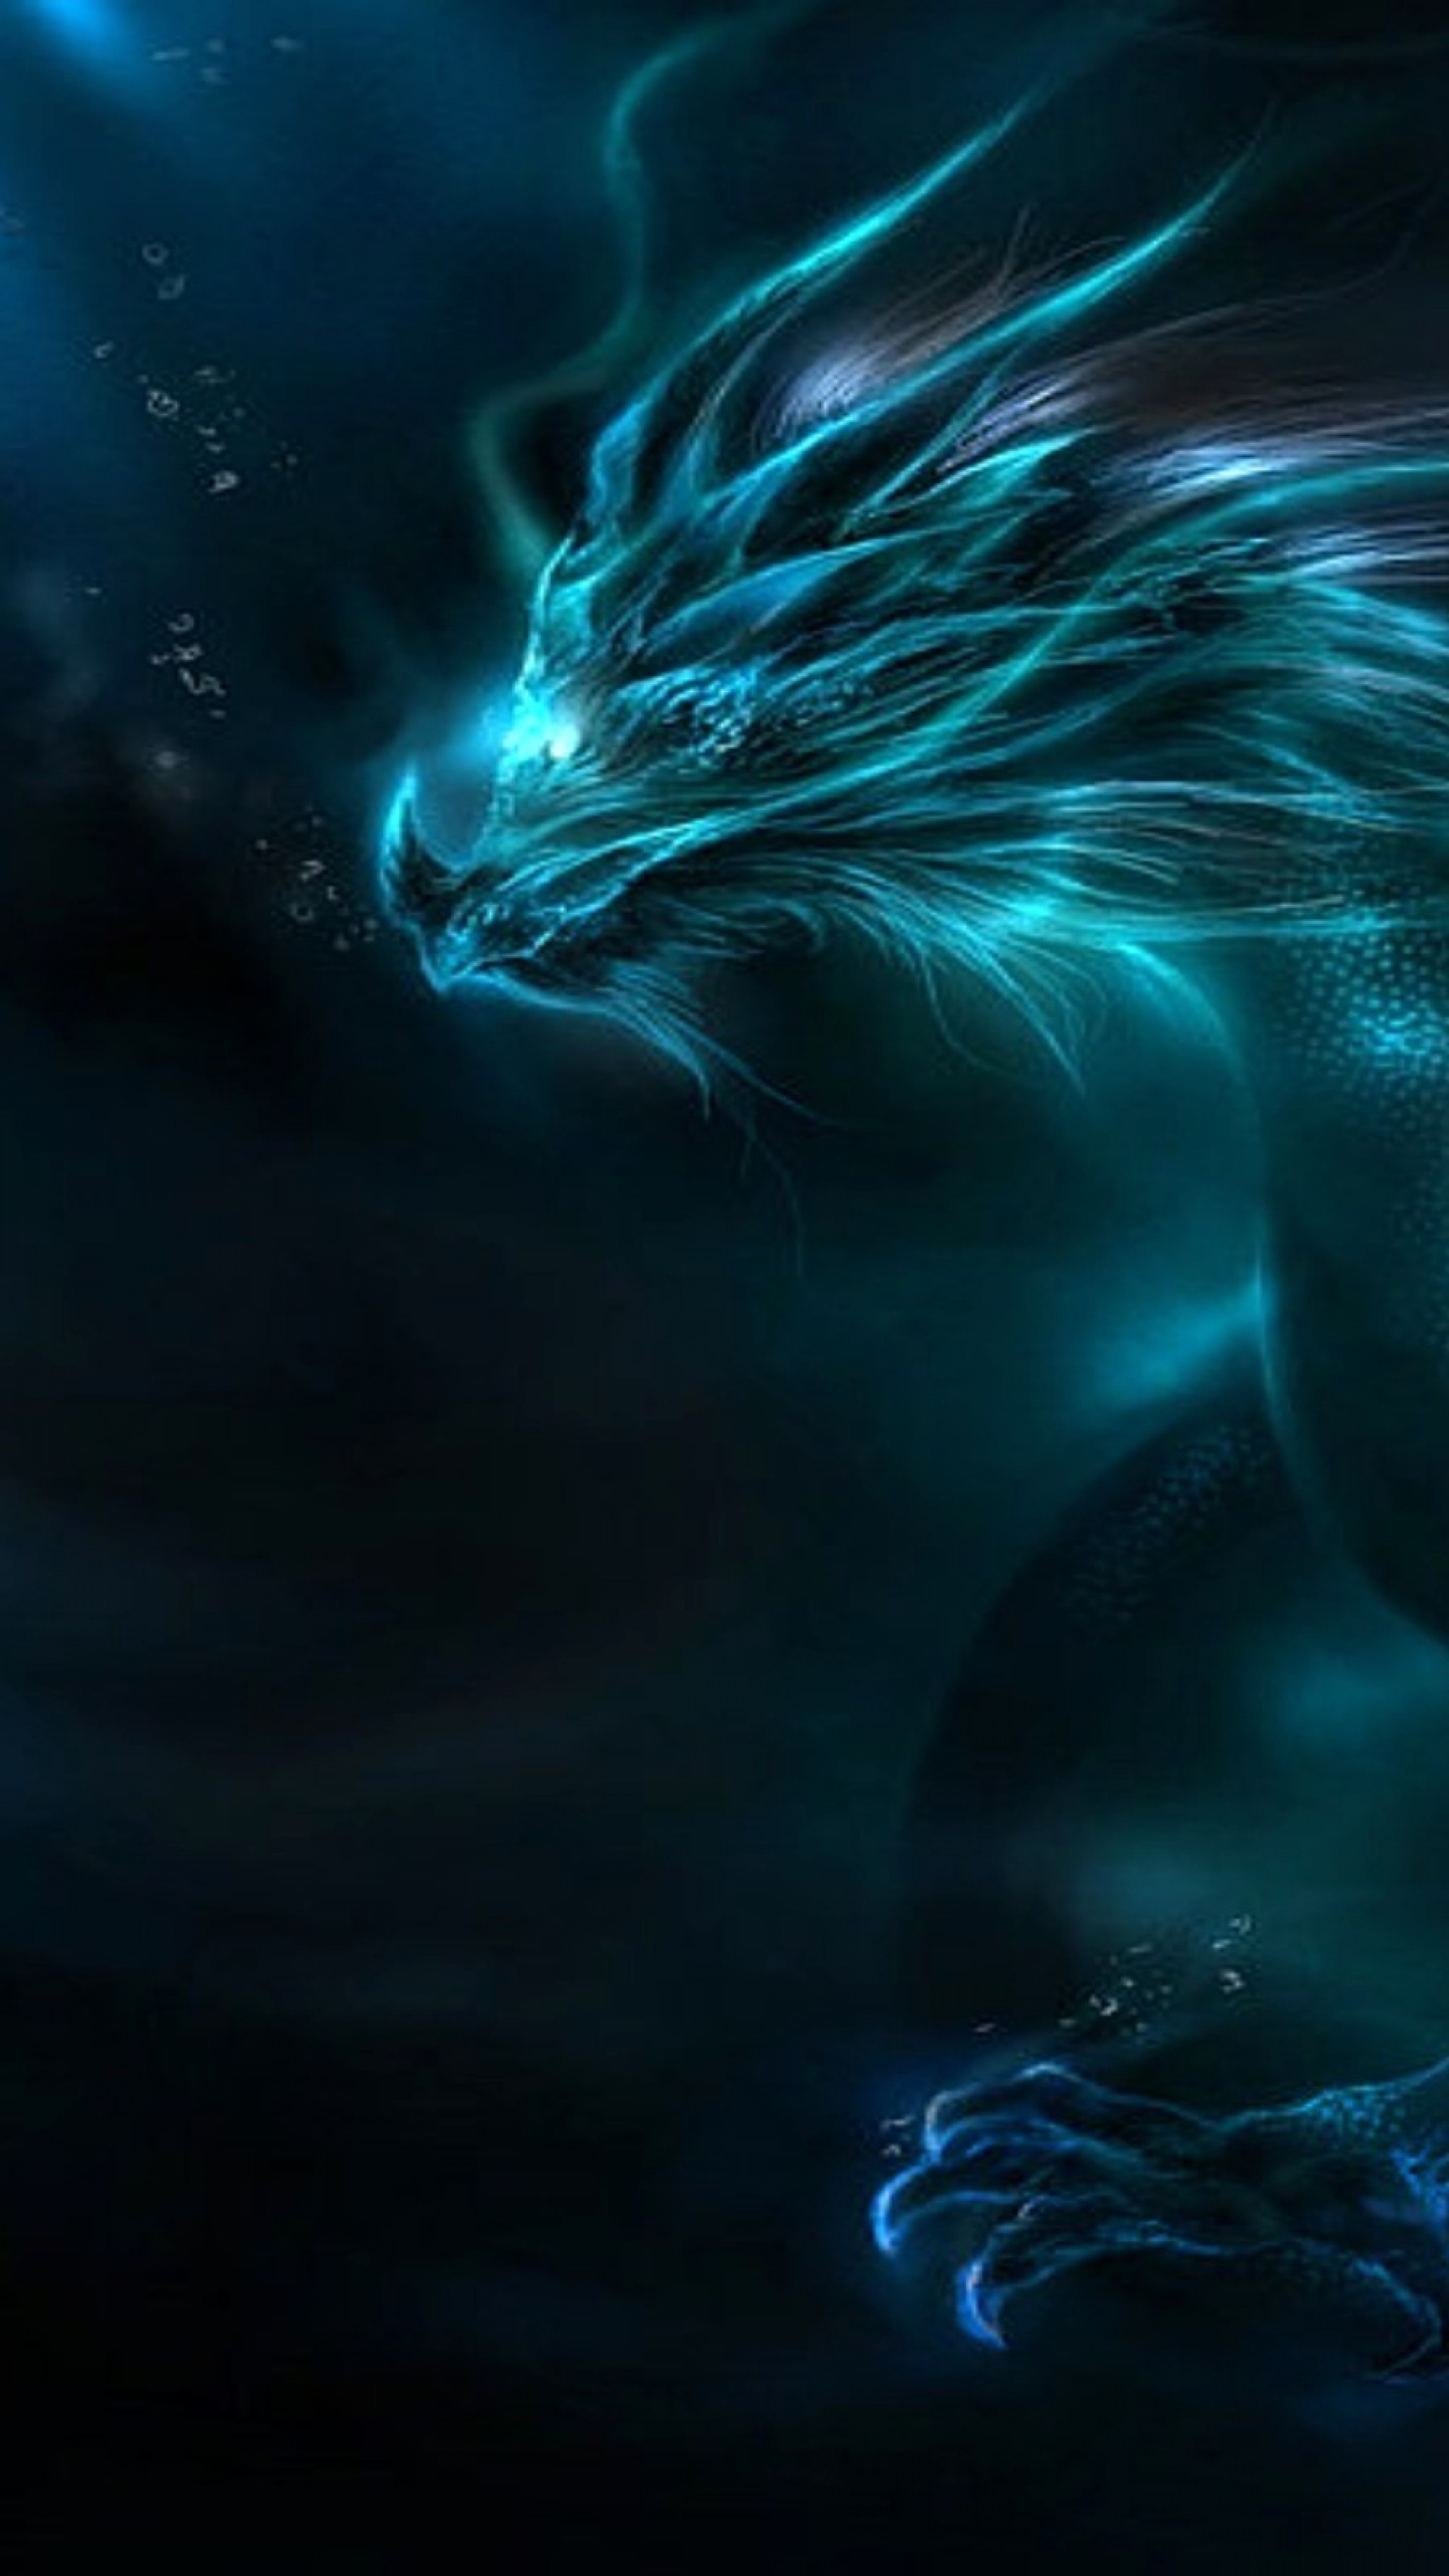 fond d'écran dragon hd,l'eau,bleu,ciel,lumière,ténèbres